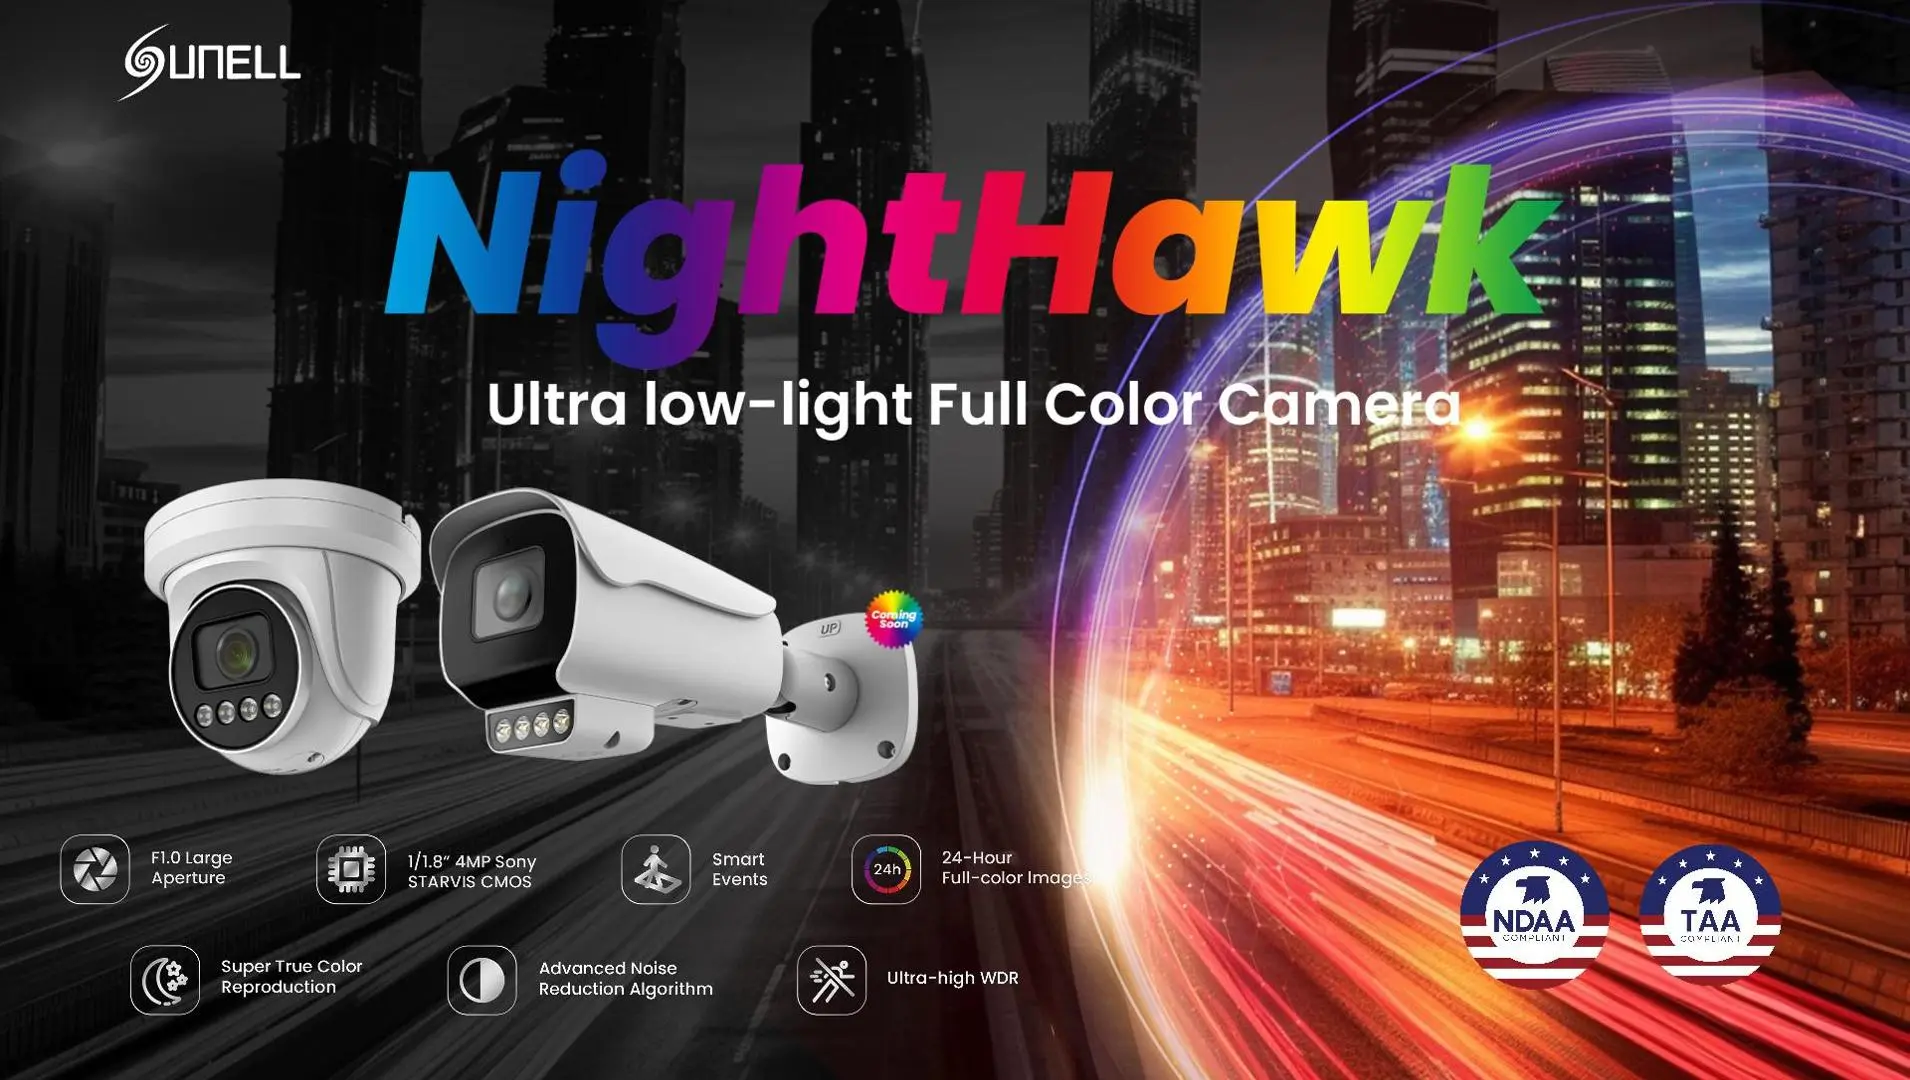 Sunell Nighthawk Inteligentna, pełnokolorowa kamera o bardzo słabym oświetleniu